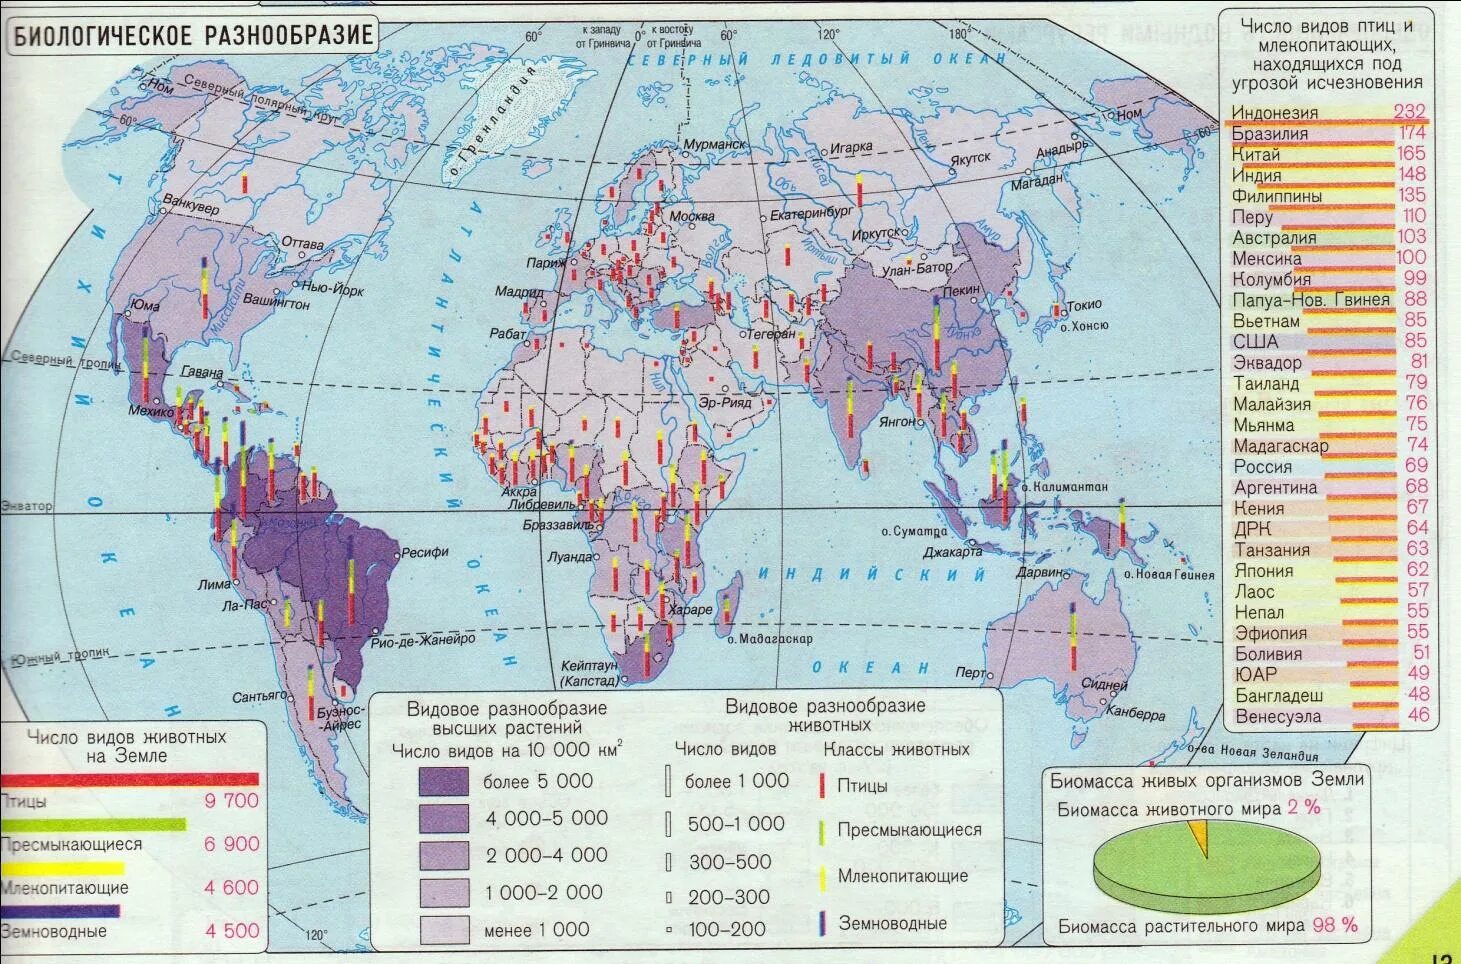 Palworld карта ресурсов. Распределение ресурсов мирового океана карта. Биологические ресурсы карта. Карта биологических ресурсов мирового океана.